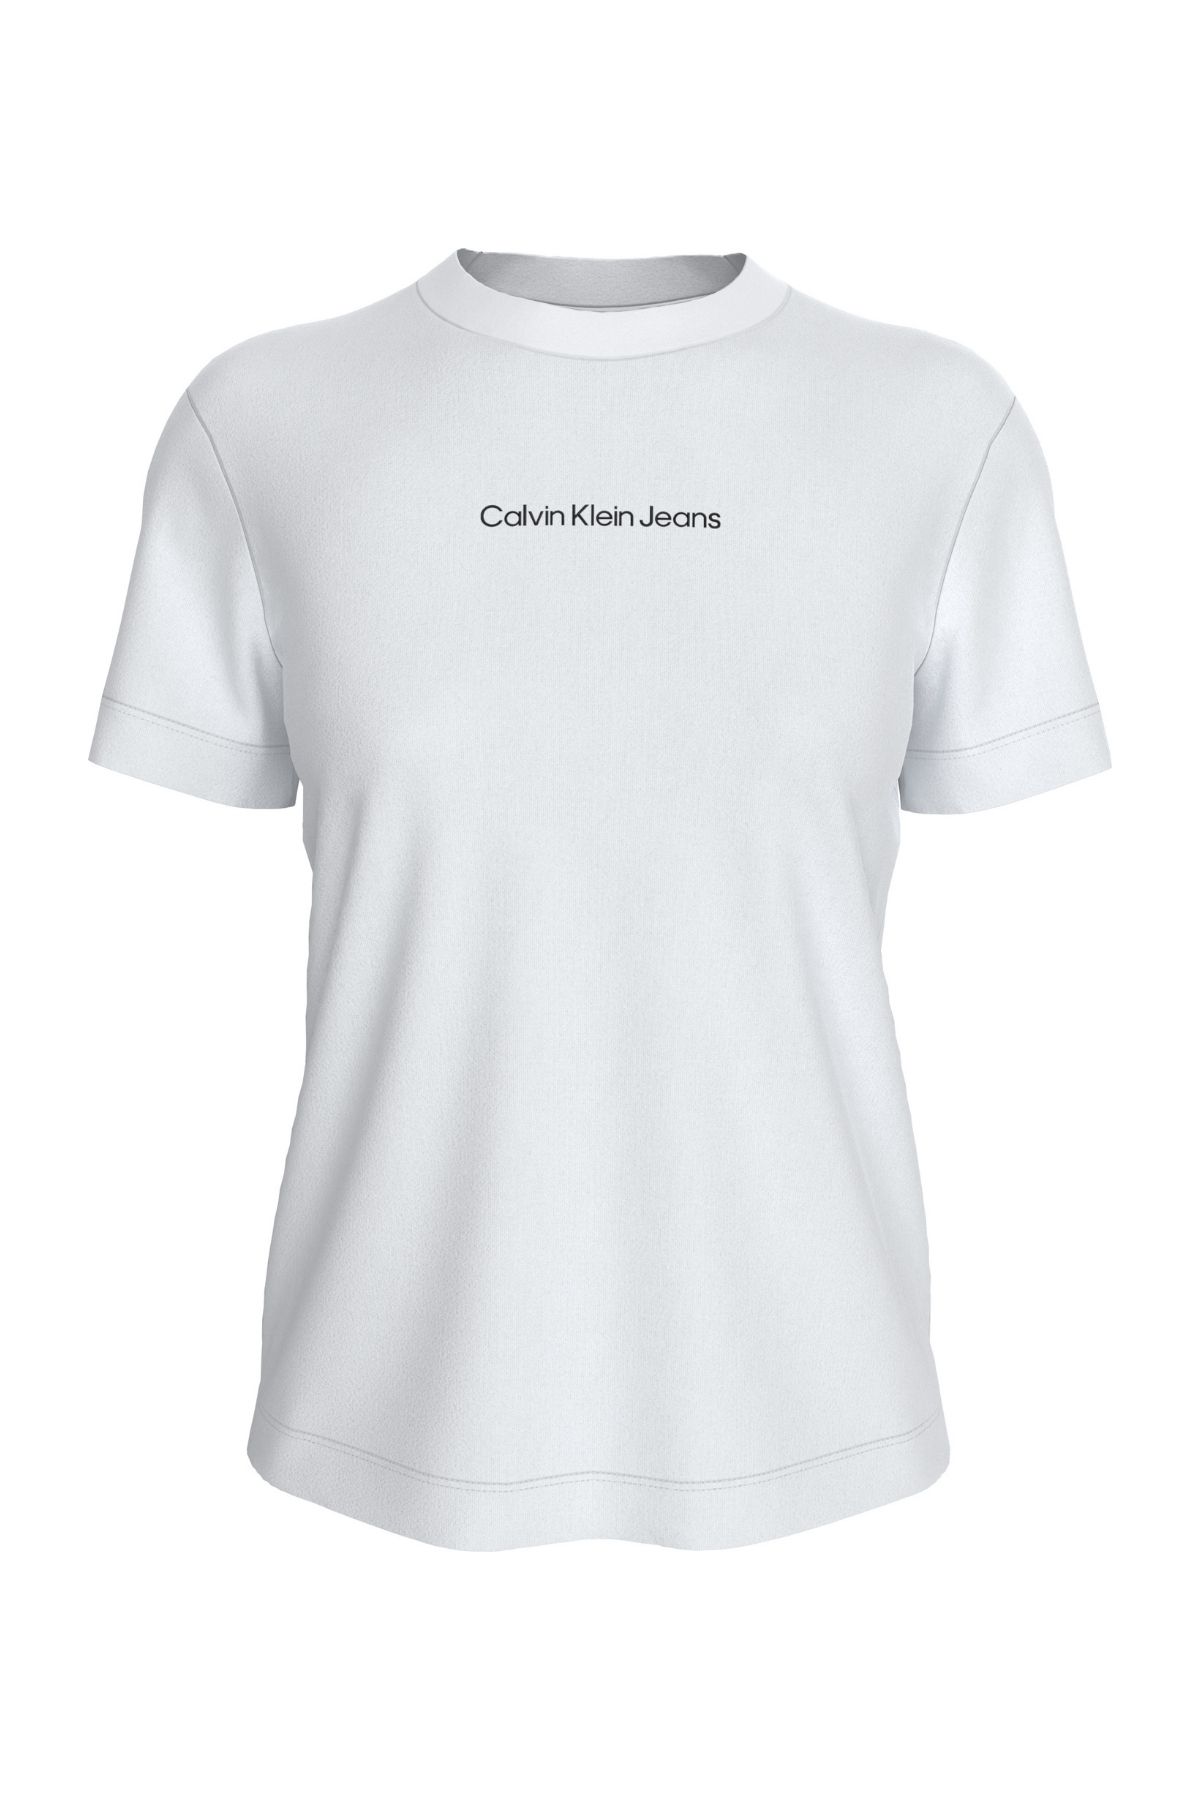 Calvin Klein Kadın Marka Logolu Günlük Kullanıma Uygun Beyaz T-shirt J20j221065-yaf